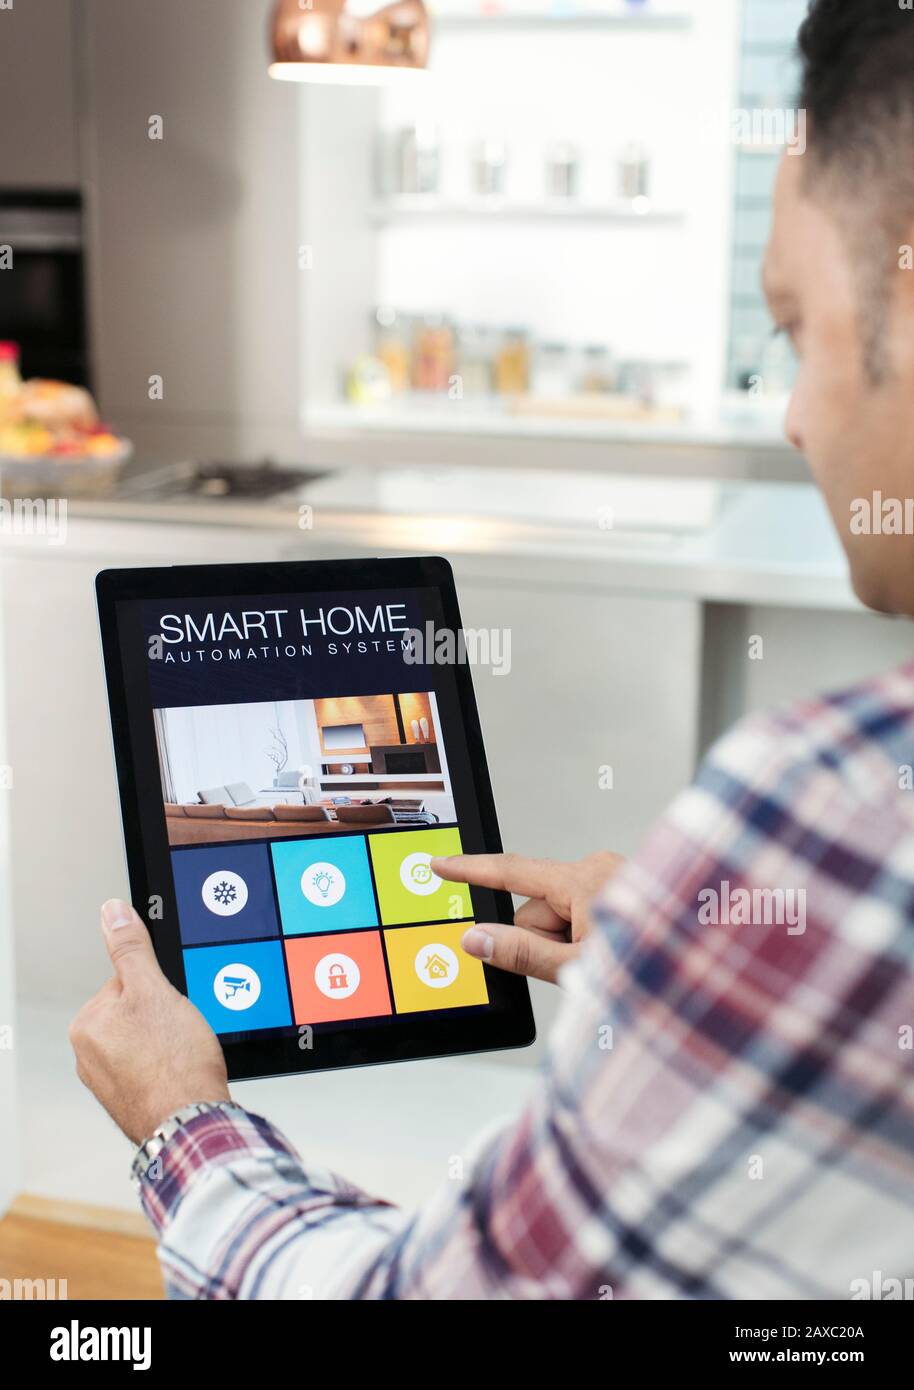 Uomo che controlla il sistema di navigazione intelligente da un tablet digitale in cucina Foto Stock